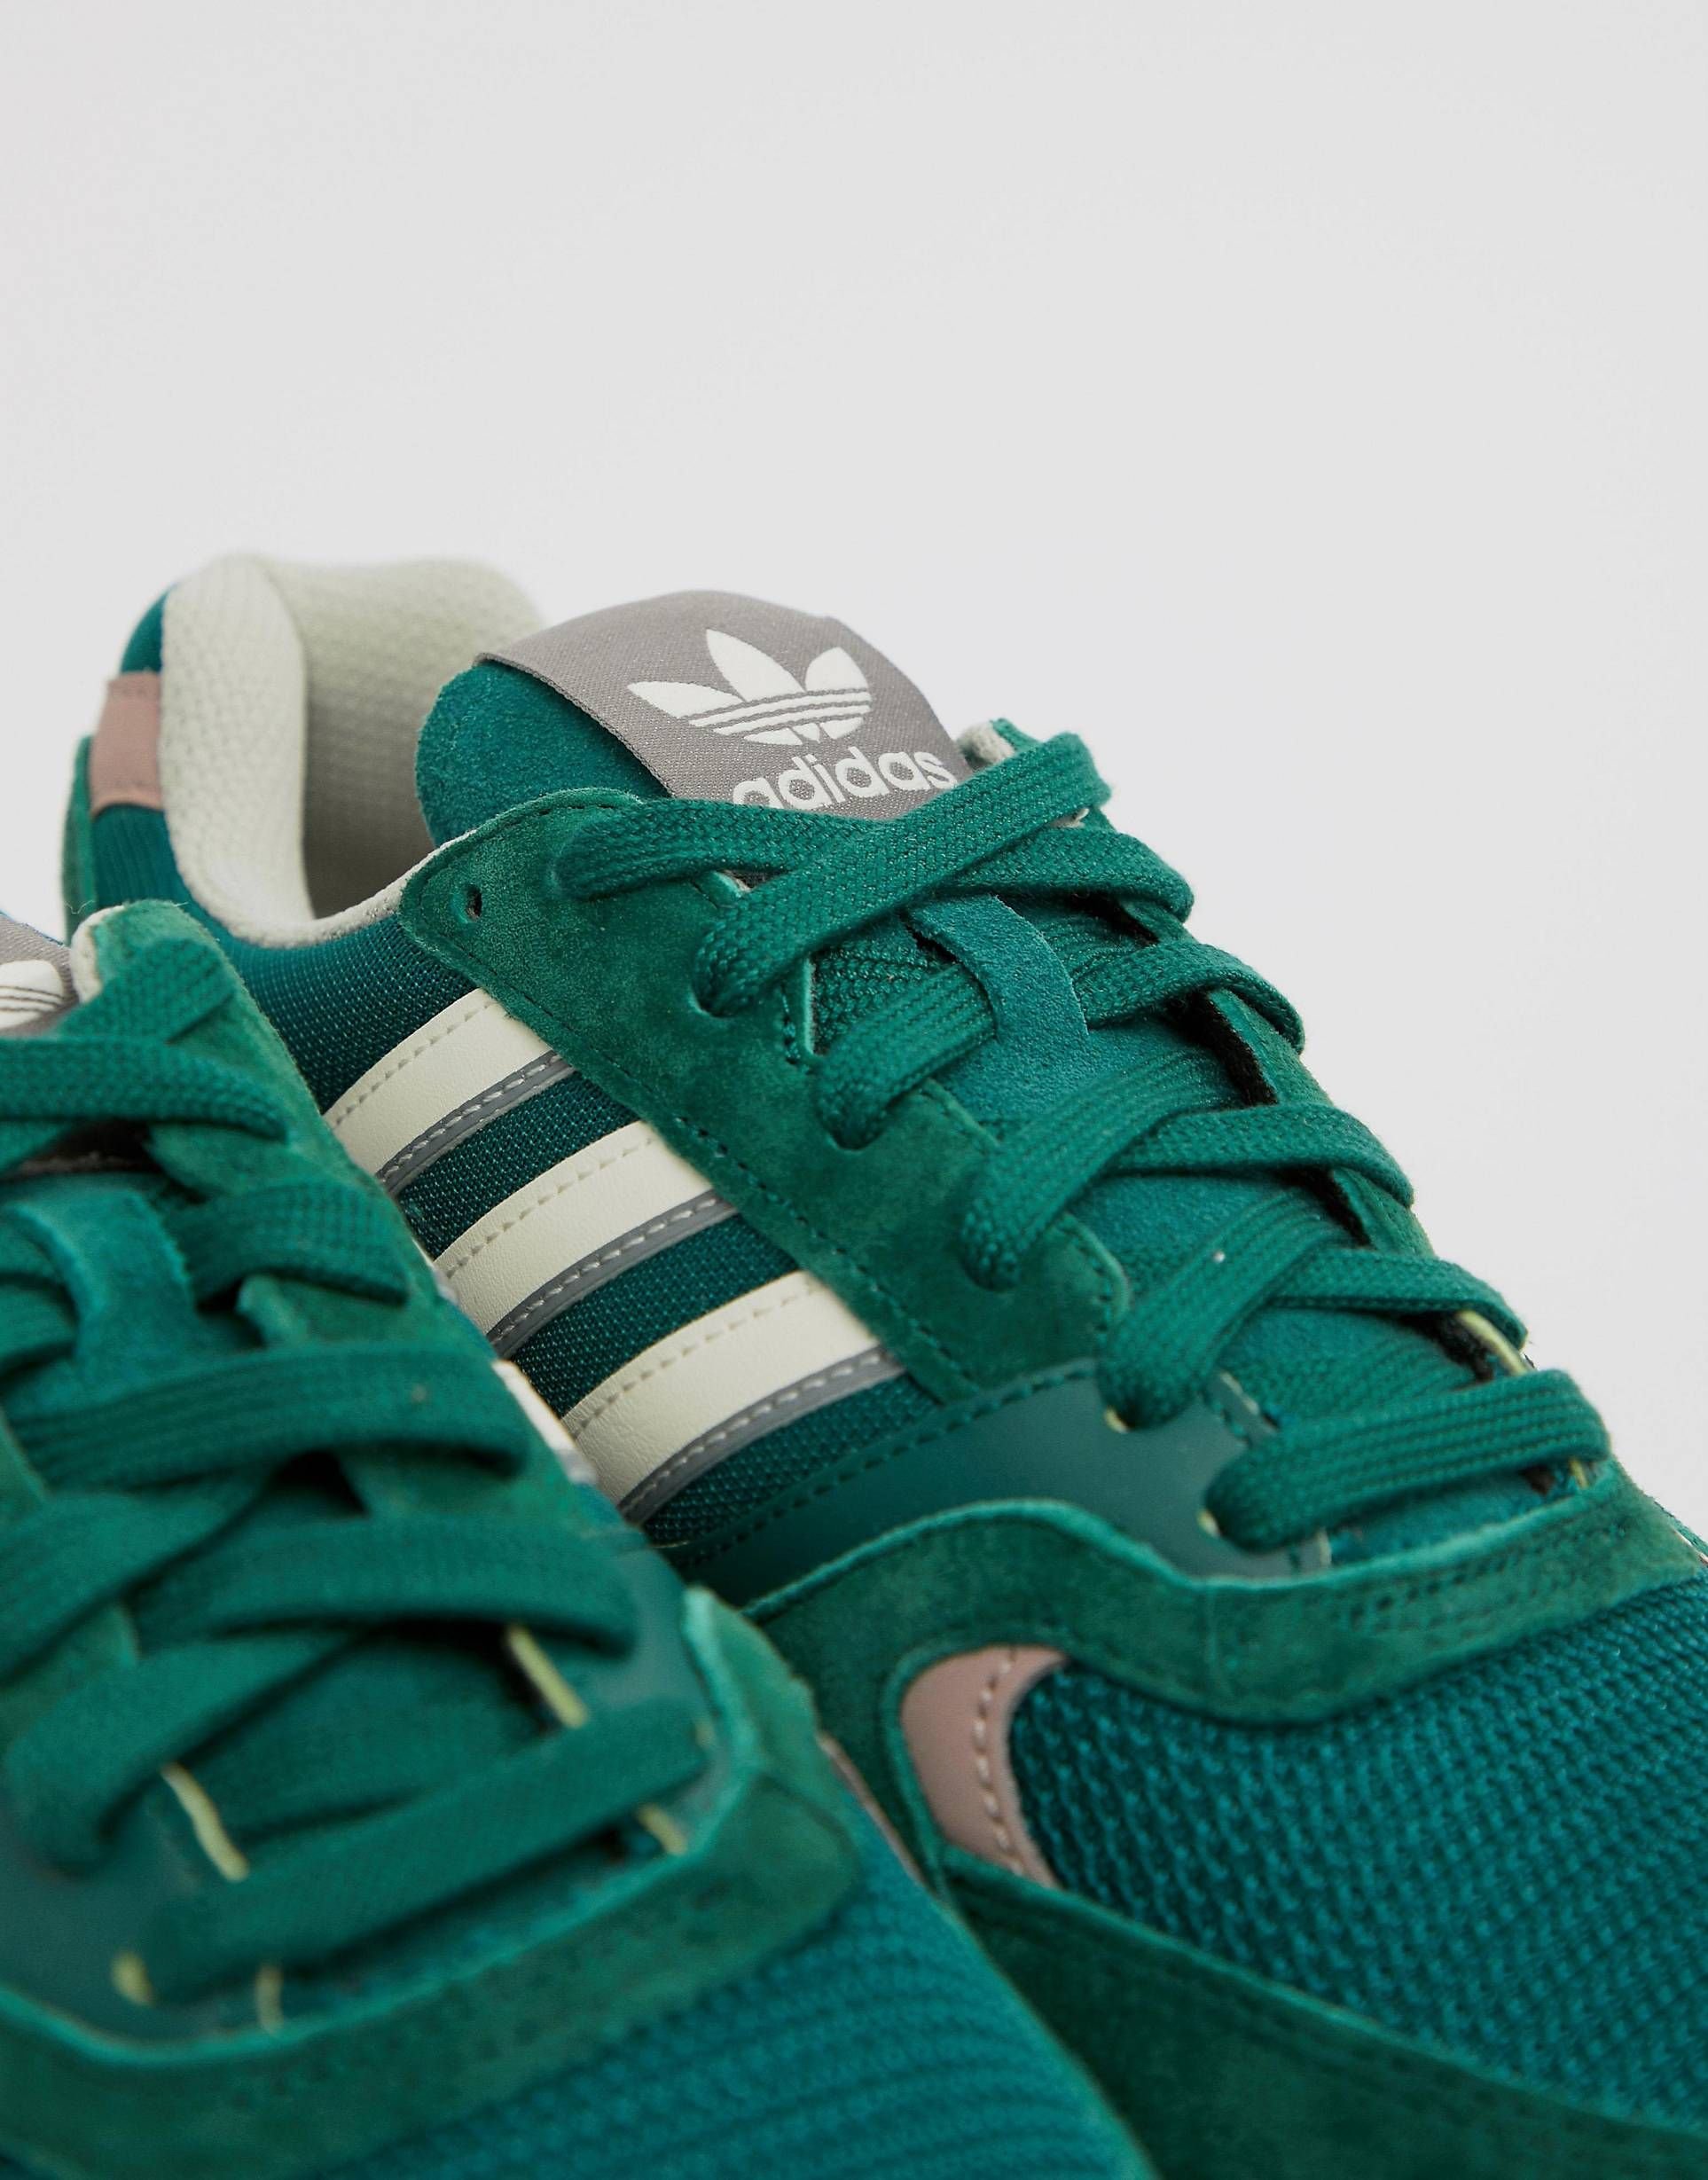 Зеленые кроссовки adidas. Adidas Originals кроссовки зеленые. Адидас зеленые кроссовки 2000. Адидас ориджинал зеленые. Adidas Quesence Green.